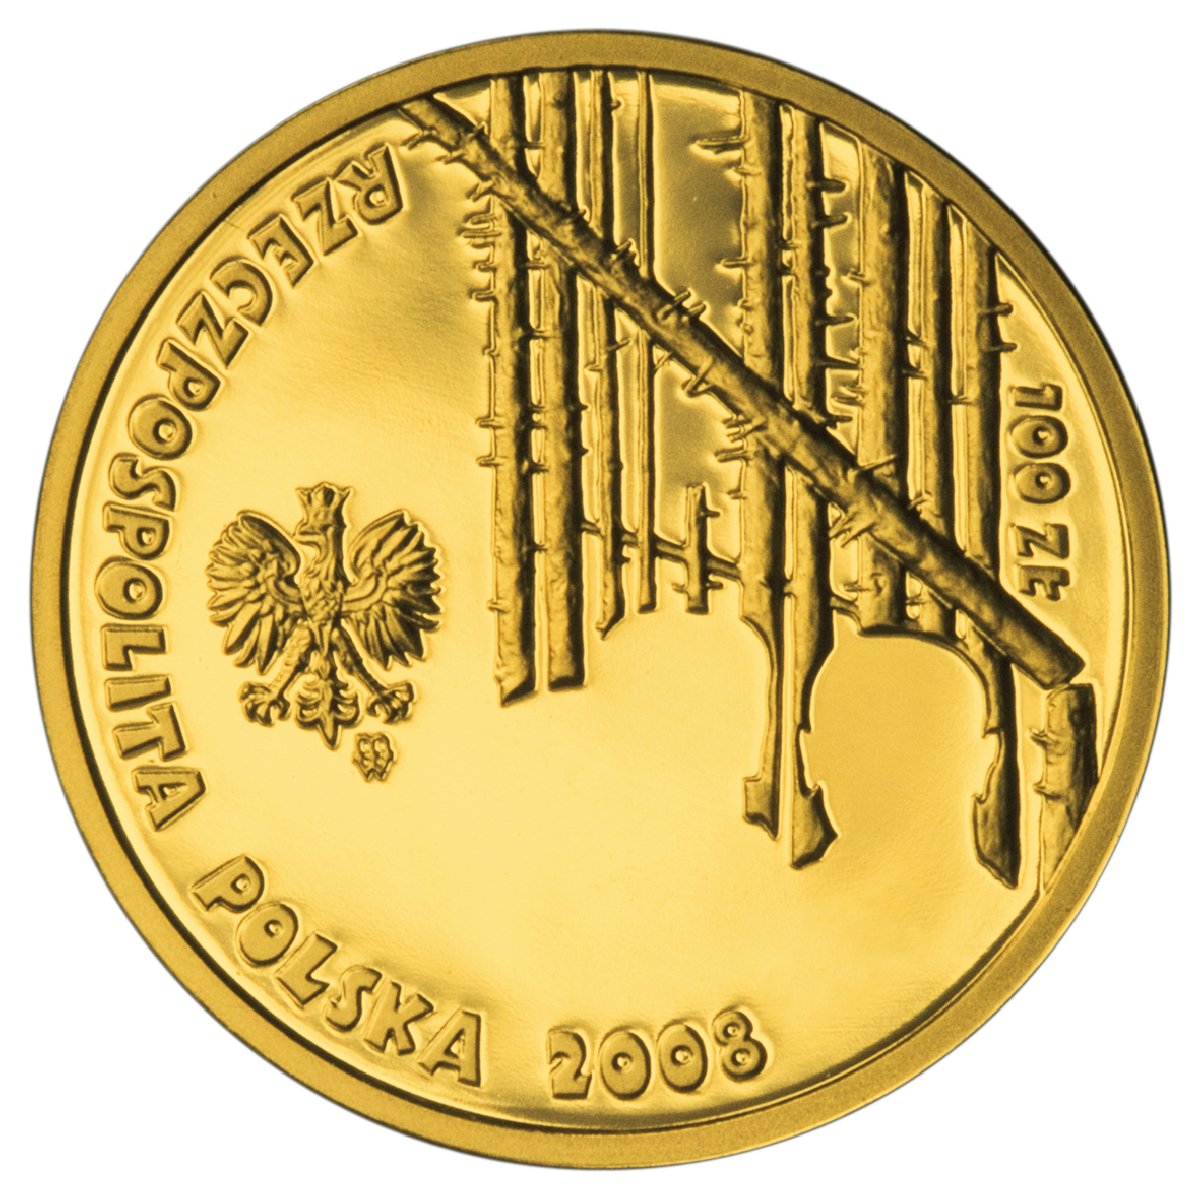 PL 100 Zloty 2008 monogram MW